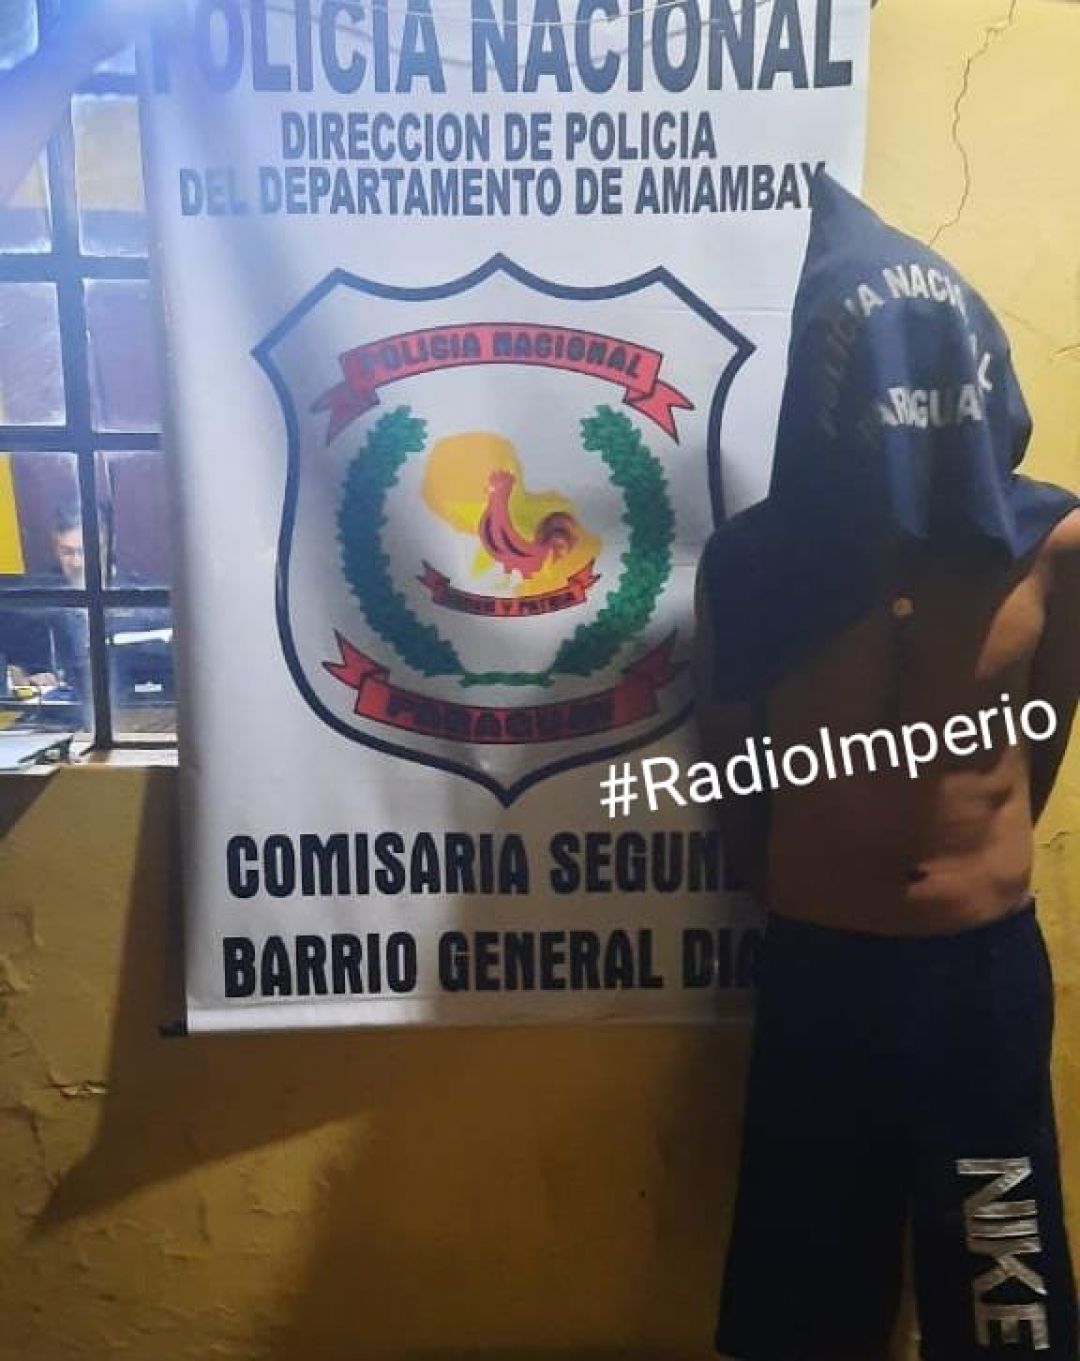 Brasileño fue detenido por la policía y recuperaron objetos hurtados